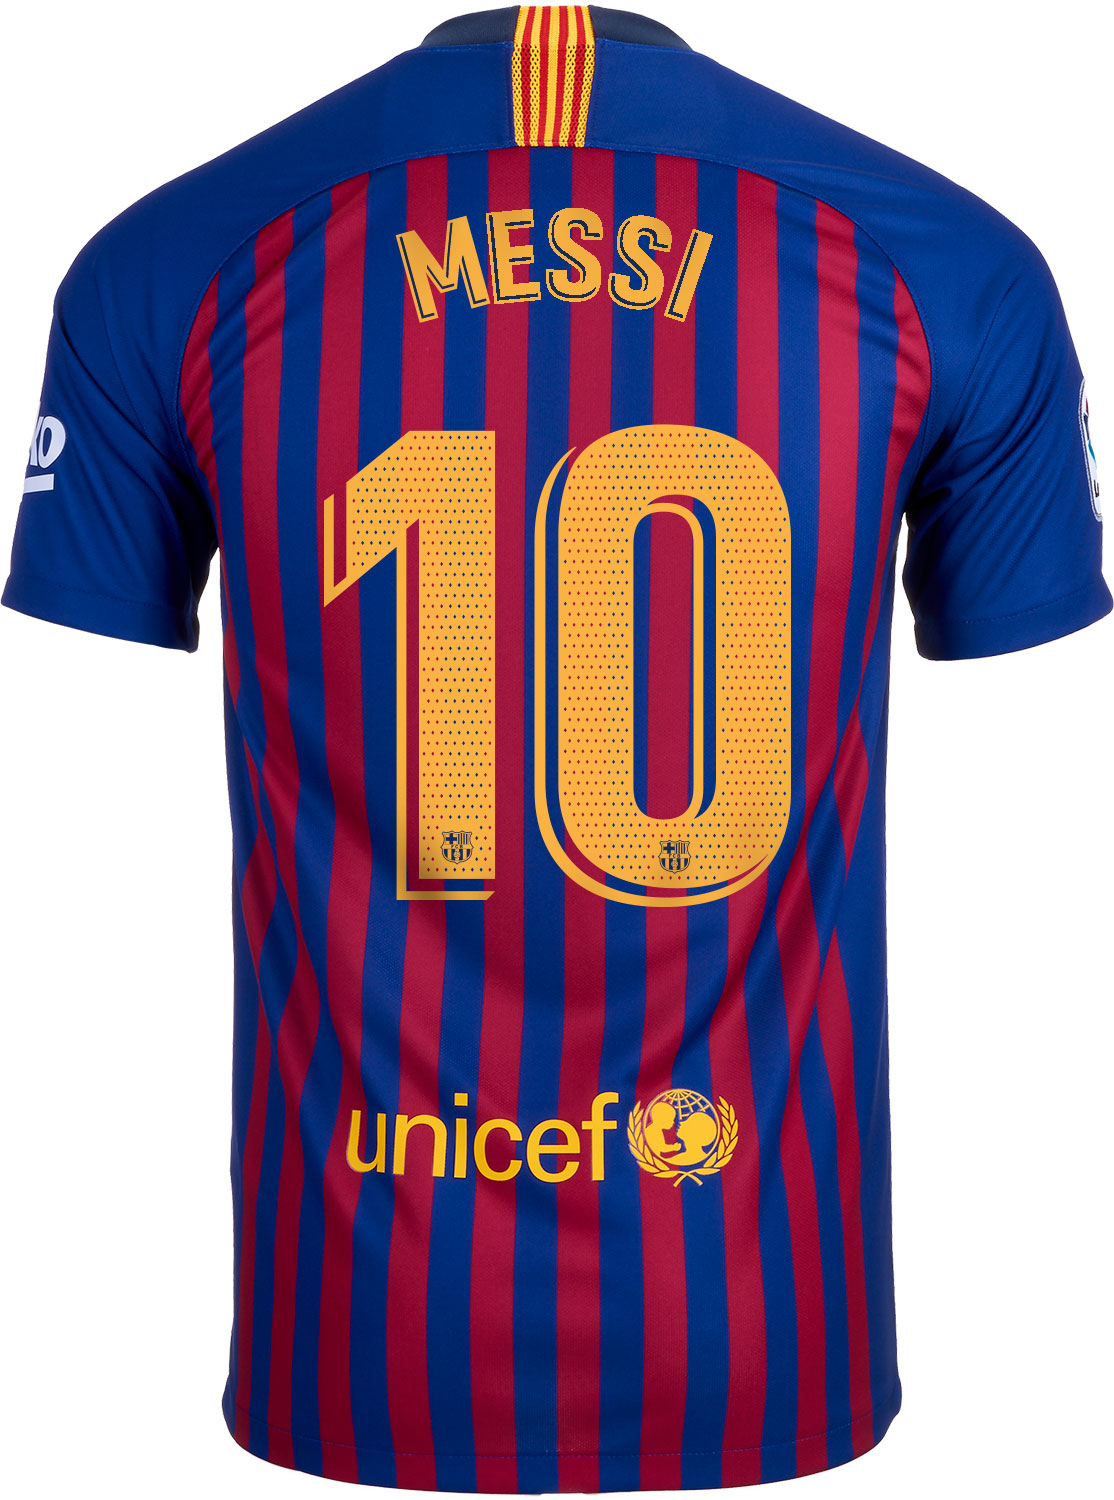 Nike Lionel Messi Barcelona Home Jersey Outlet 100%, Save 40% | jlcatj ...